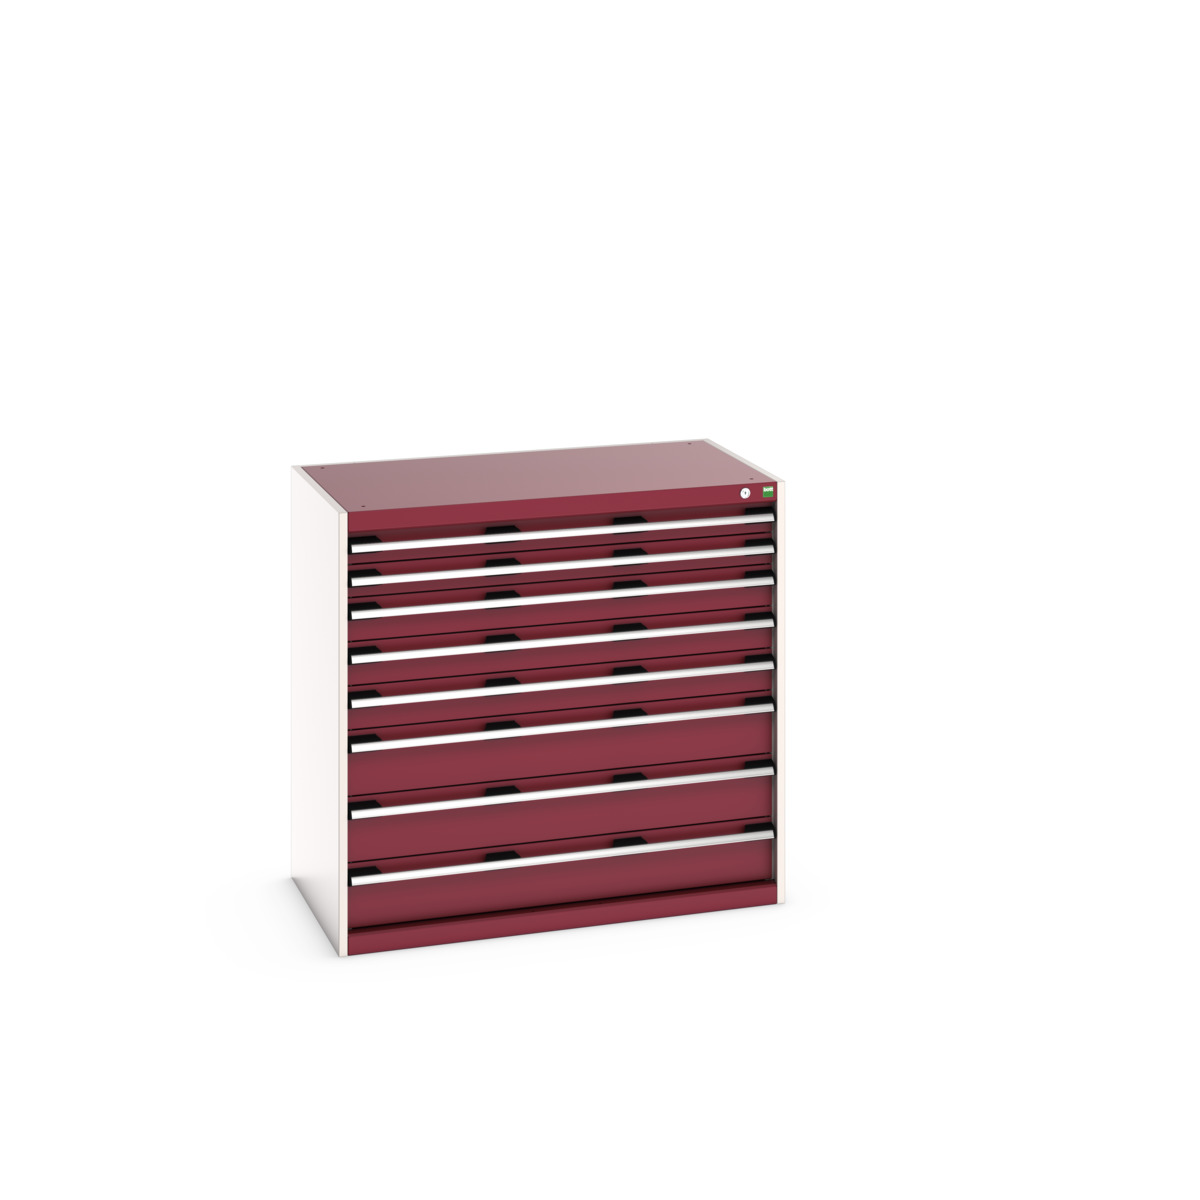 40021033.24V - cubio drawer cabinet